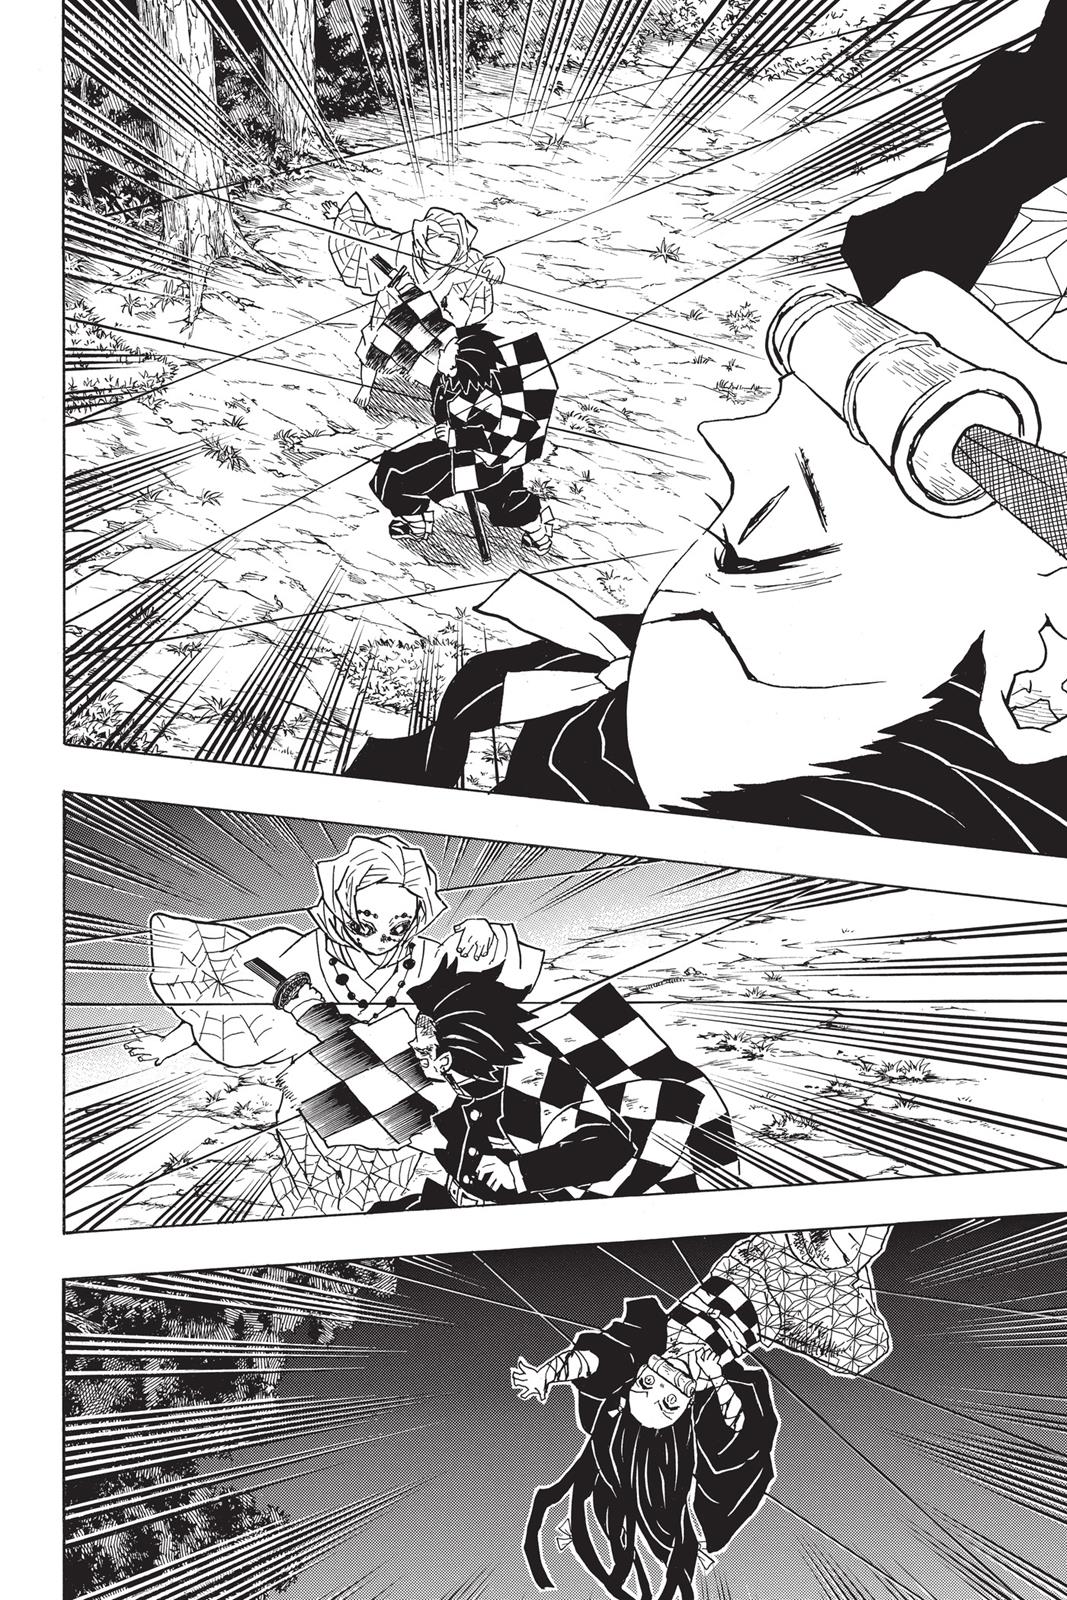 Demon Slayer Manga Manga Chapter - 40 - image 12